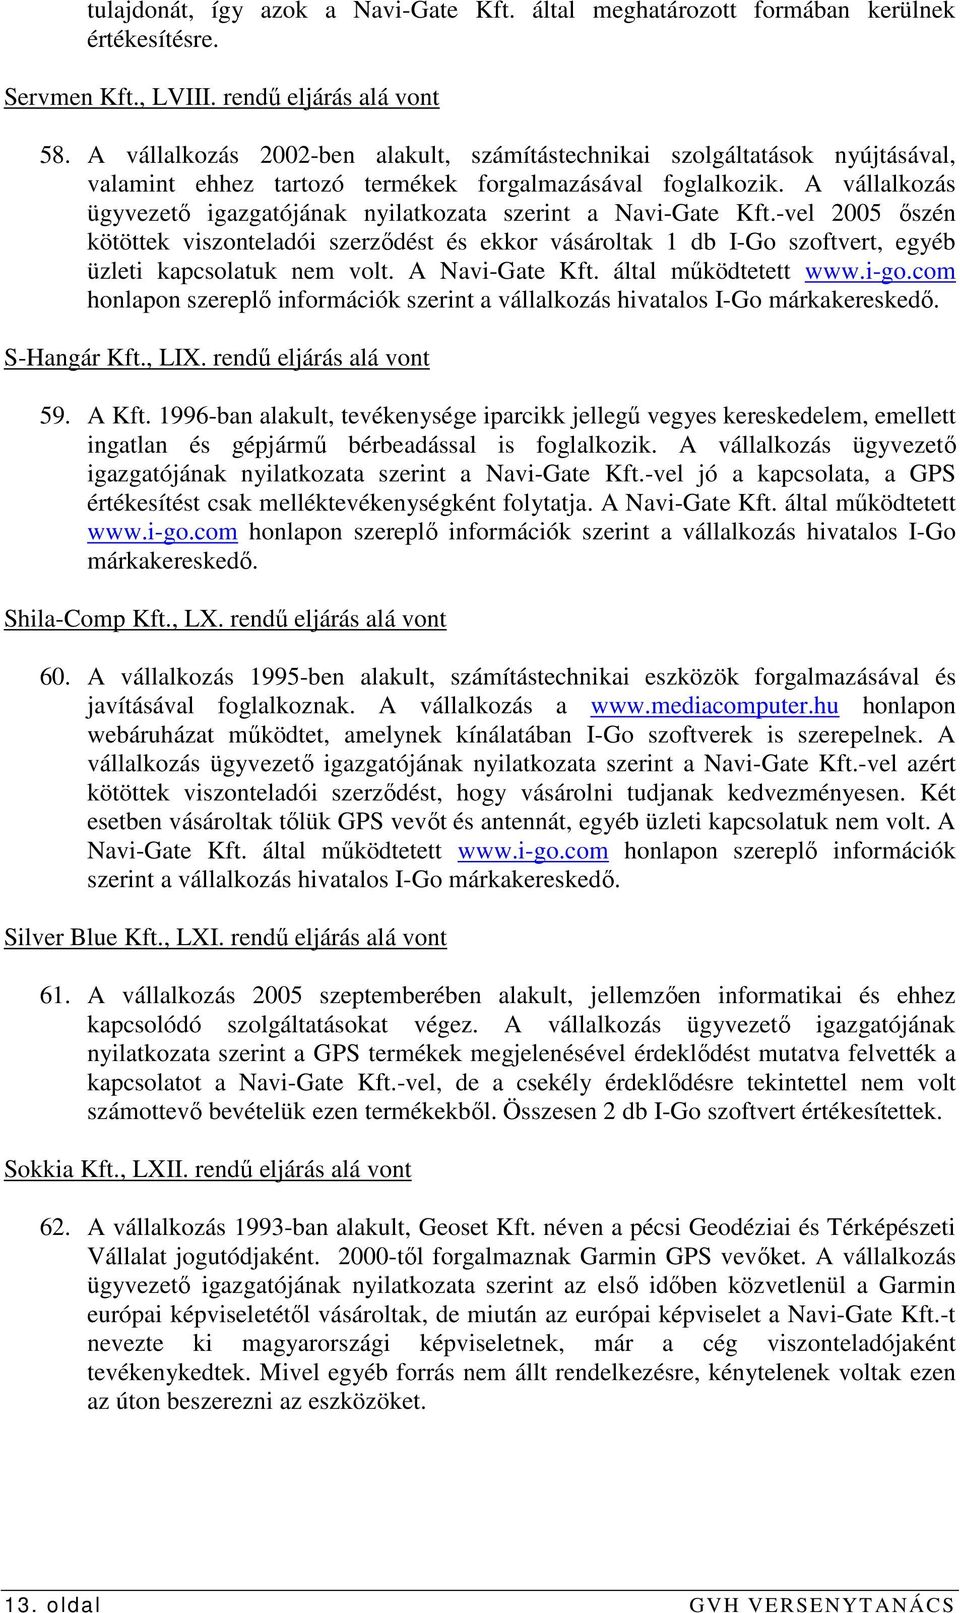 A vállalkozás ügyvezetı igazgatójának nyilatkozata szerint a Navi-Gate Kft.-vel 2005 ıszén kötöttek viszonteladói szerzıdést és ekkor vásároltak 1 db I-Go szoftvert, egyéb üzleti kapcsolatuk nem volt.